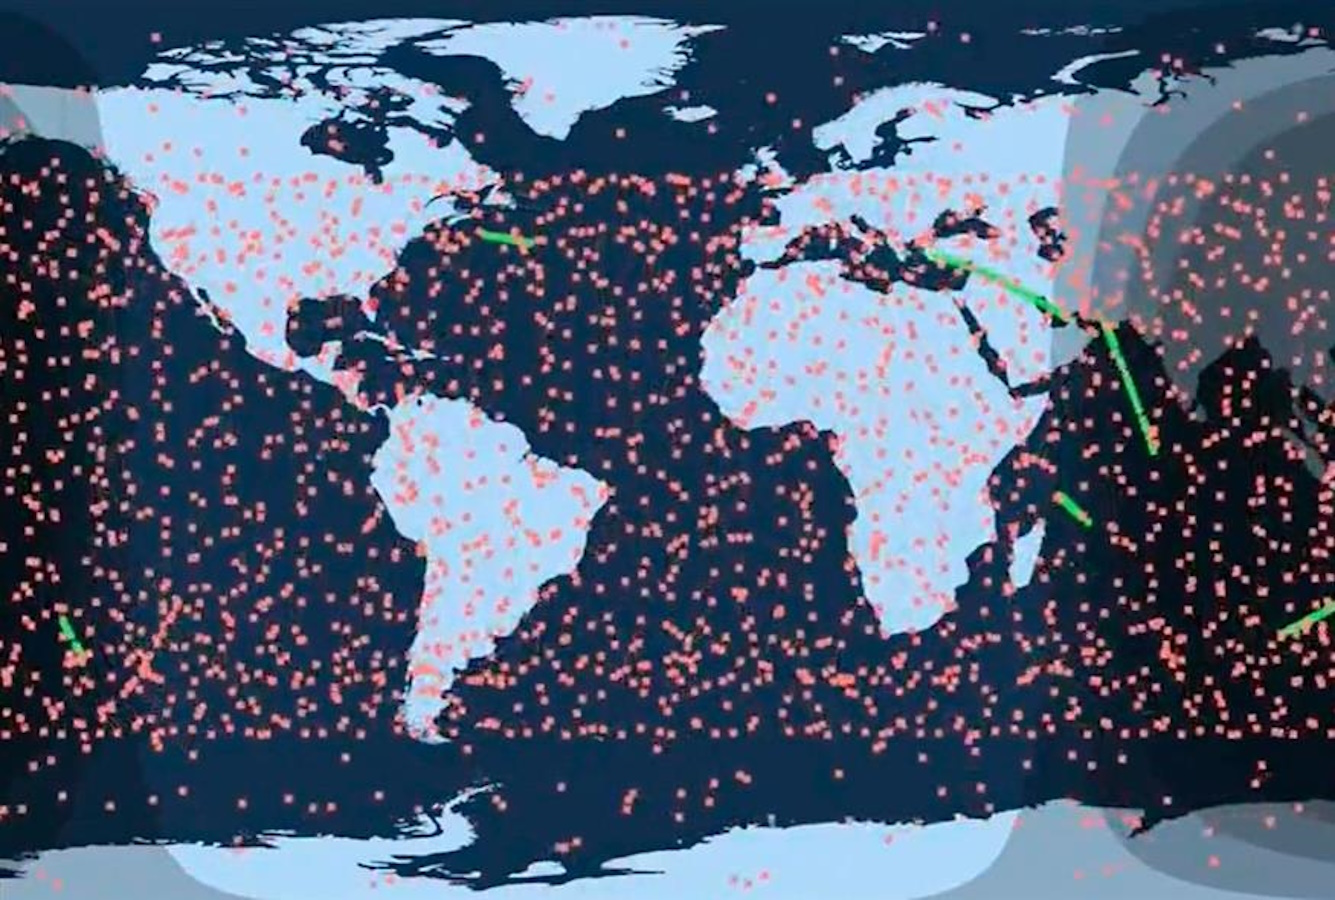 Έλον Μασκ: Εντυπωσιακό βίντεο δείχνει 5.000 δορυφόρους Starlink γύρω από τη Γη